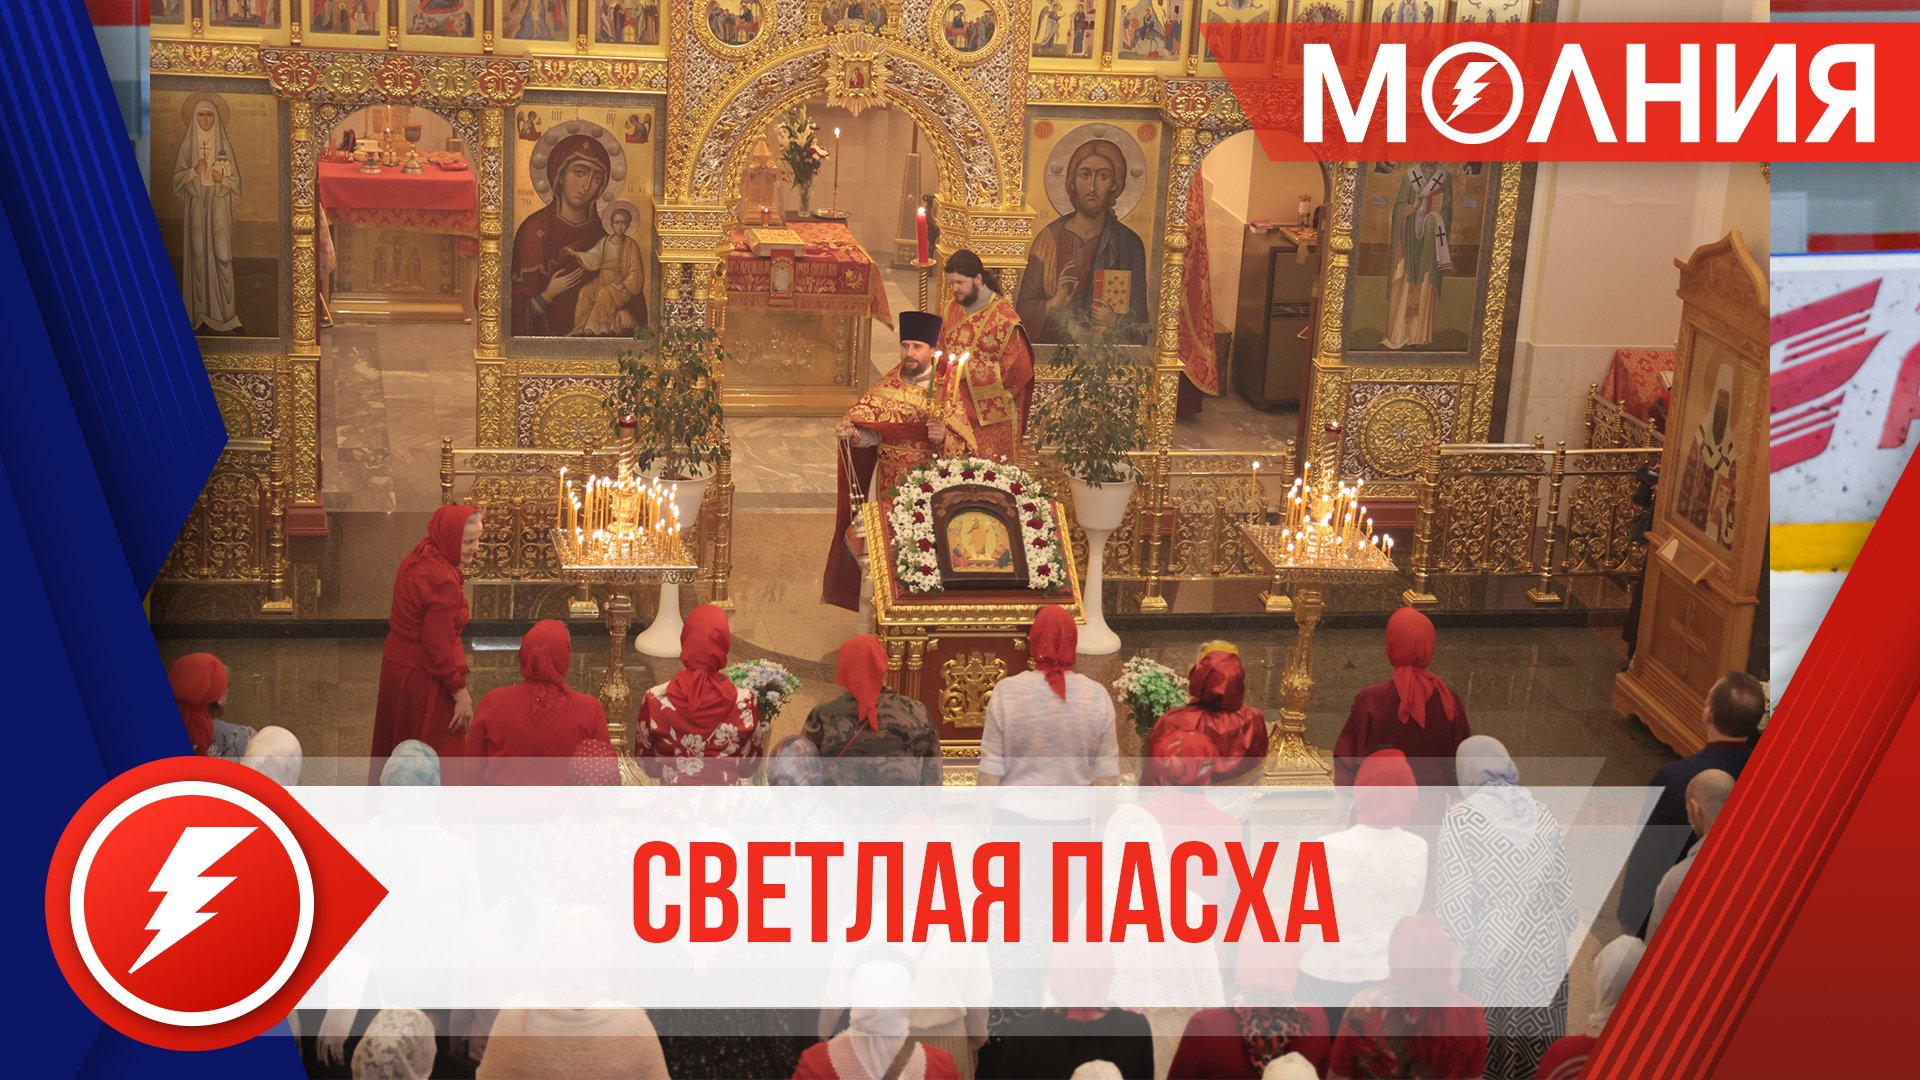 Православные пуровчане встретили Светлую Пасху